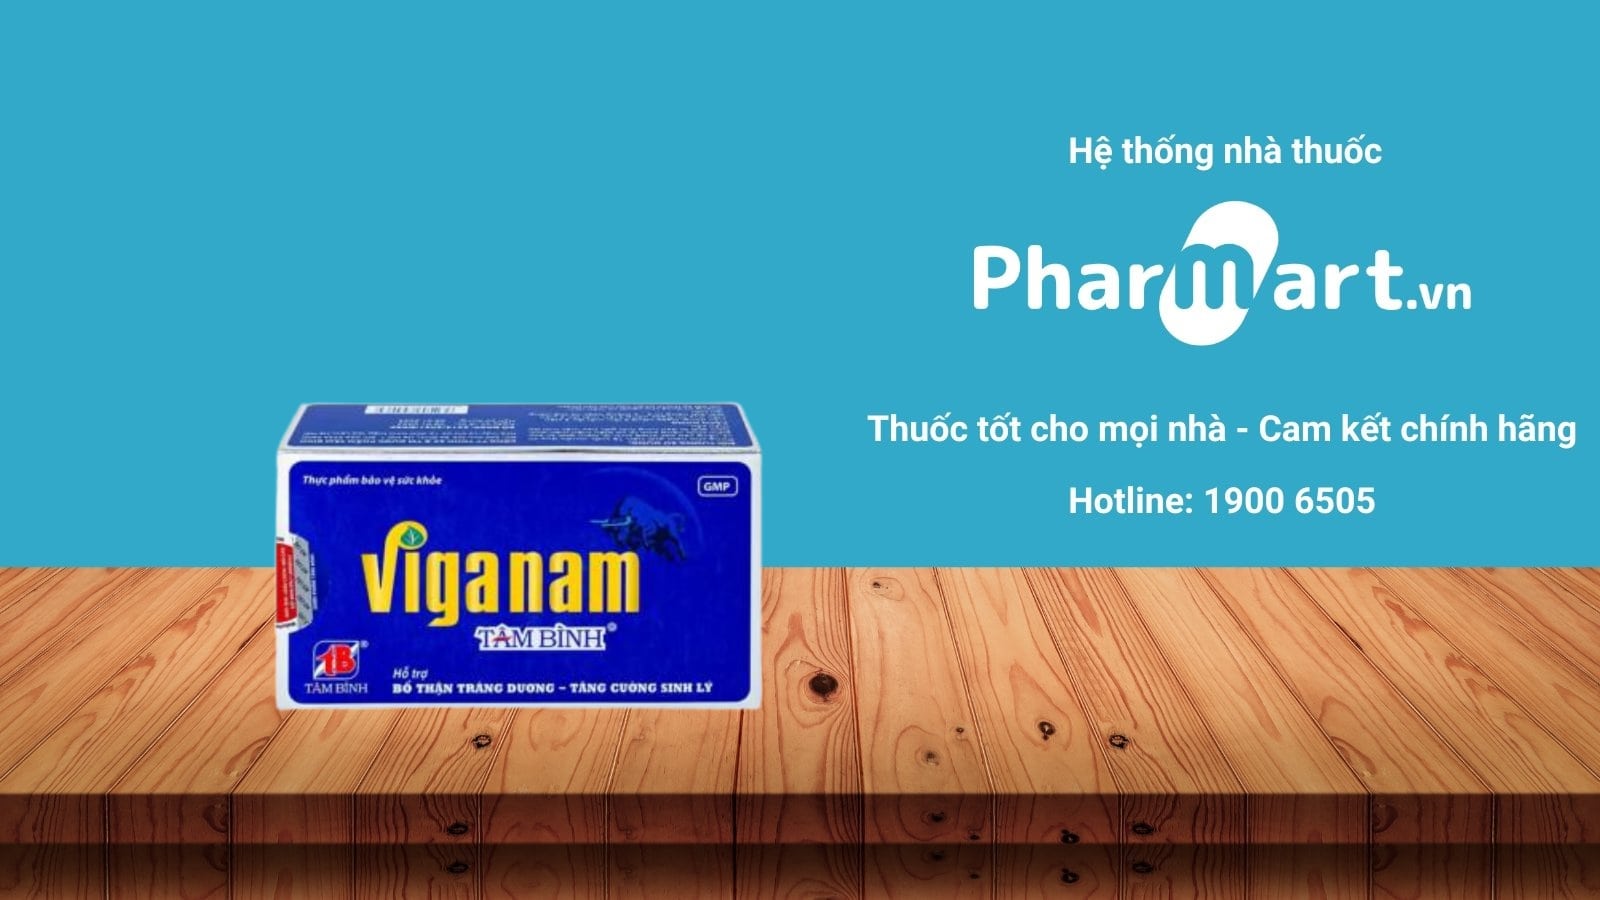 Liên hệ Pharmart.vn để đảm bảo mua Viganam Tâm Bình chính hãng